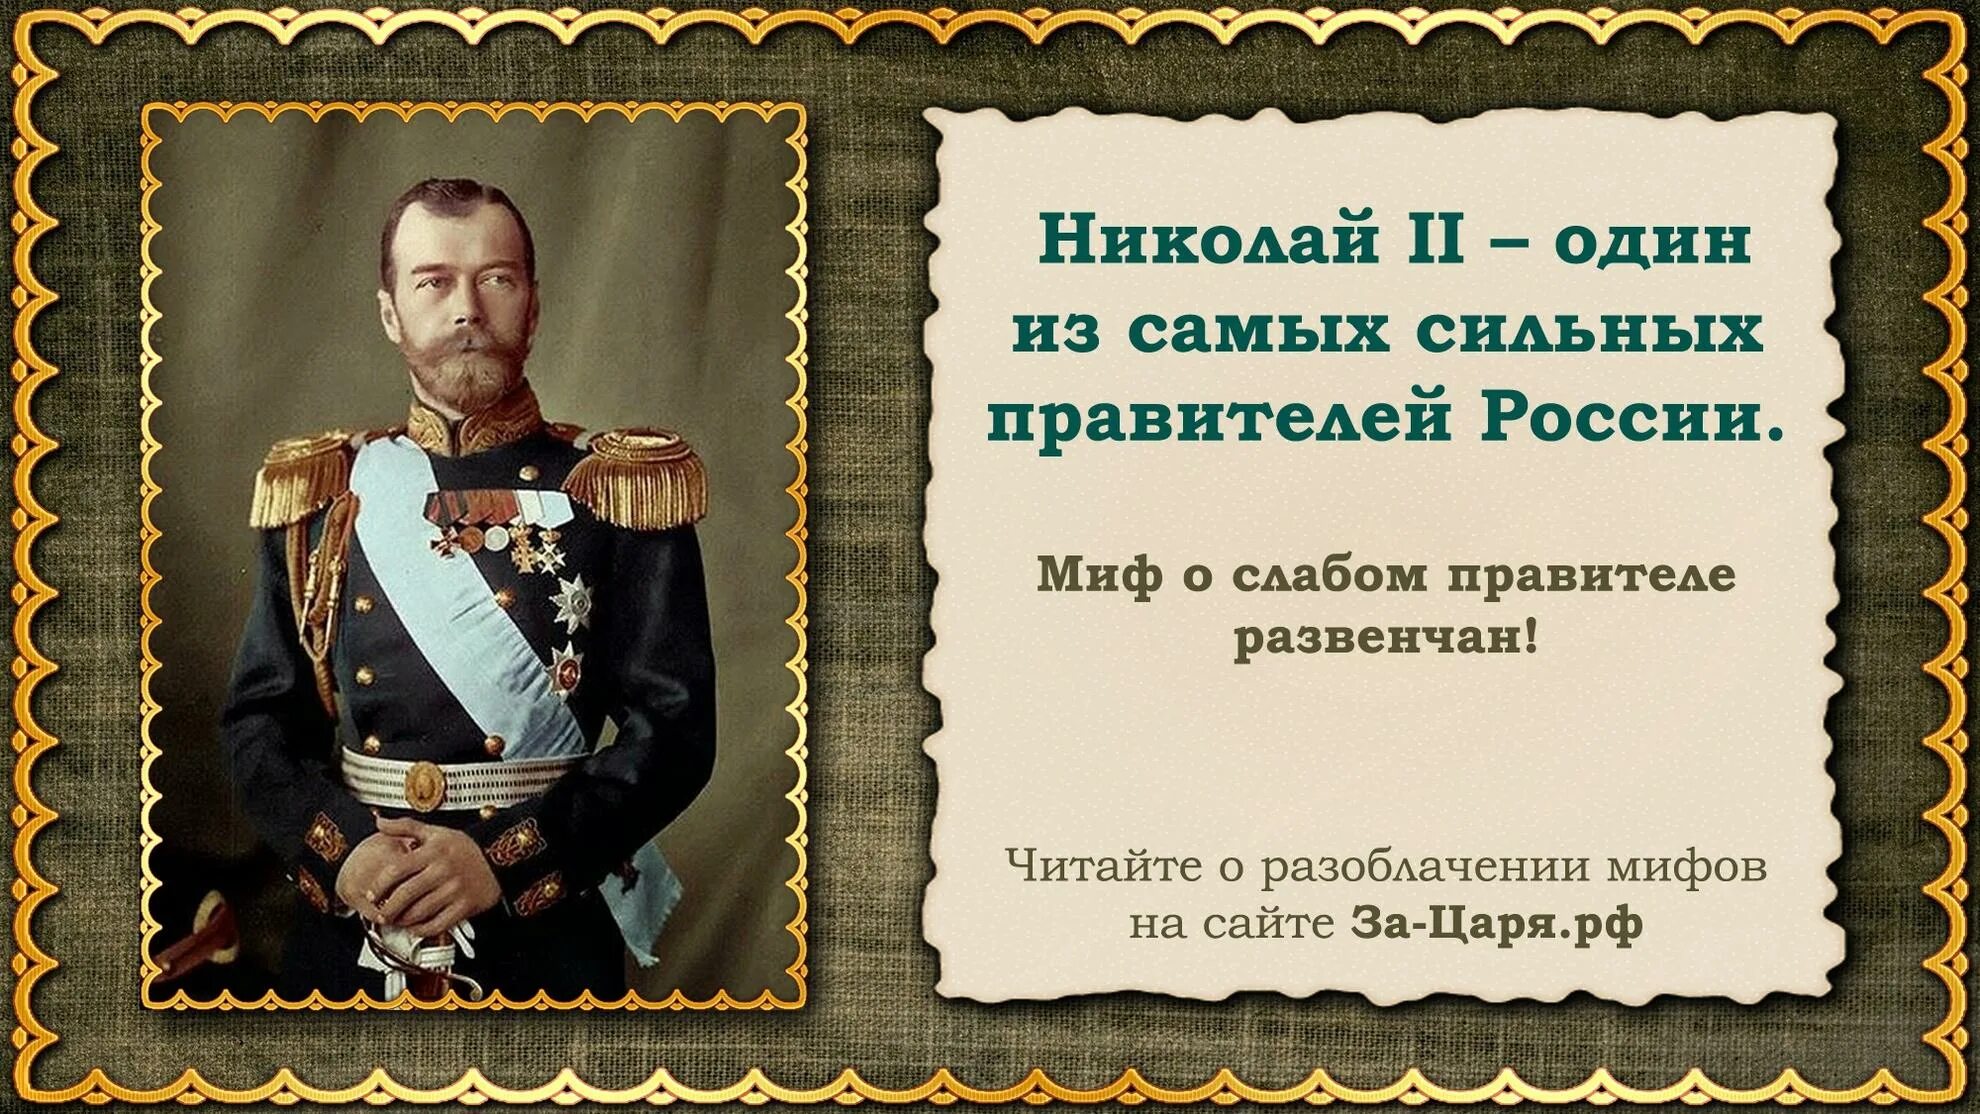 Интересные факты о Николае II. Сильные правители россии